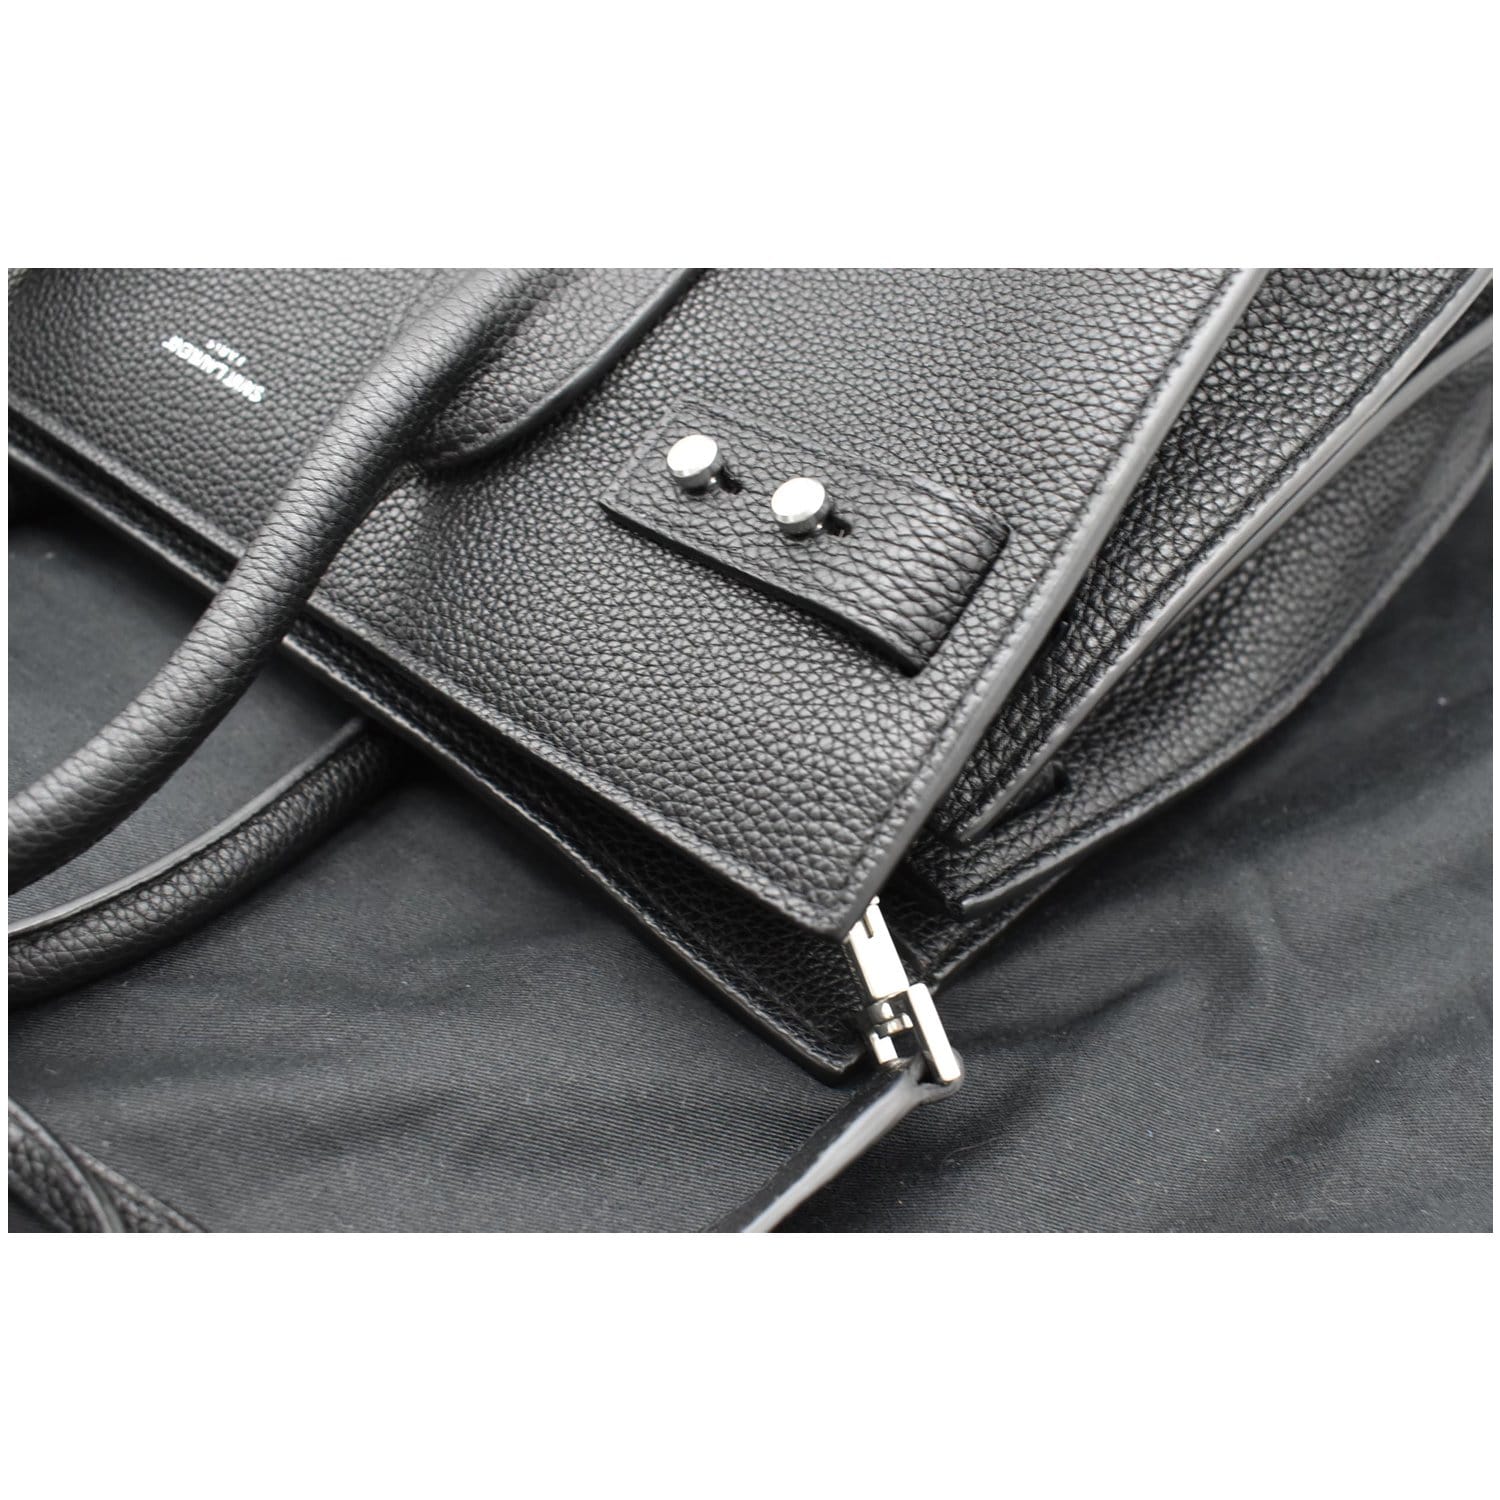 YVES SAINT LAURENT Sac de Jour Small Grained Leather Shoulder Bag Blac